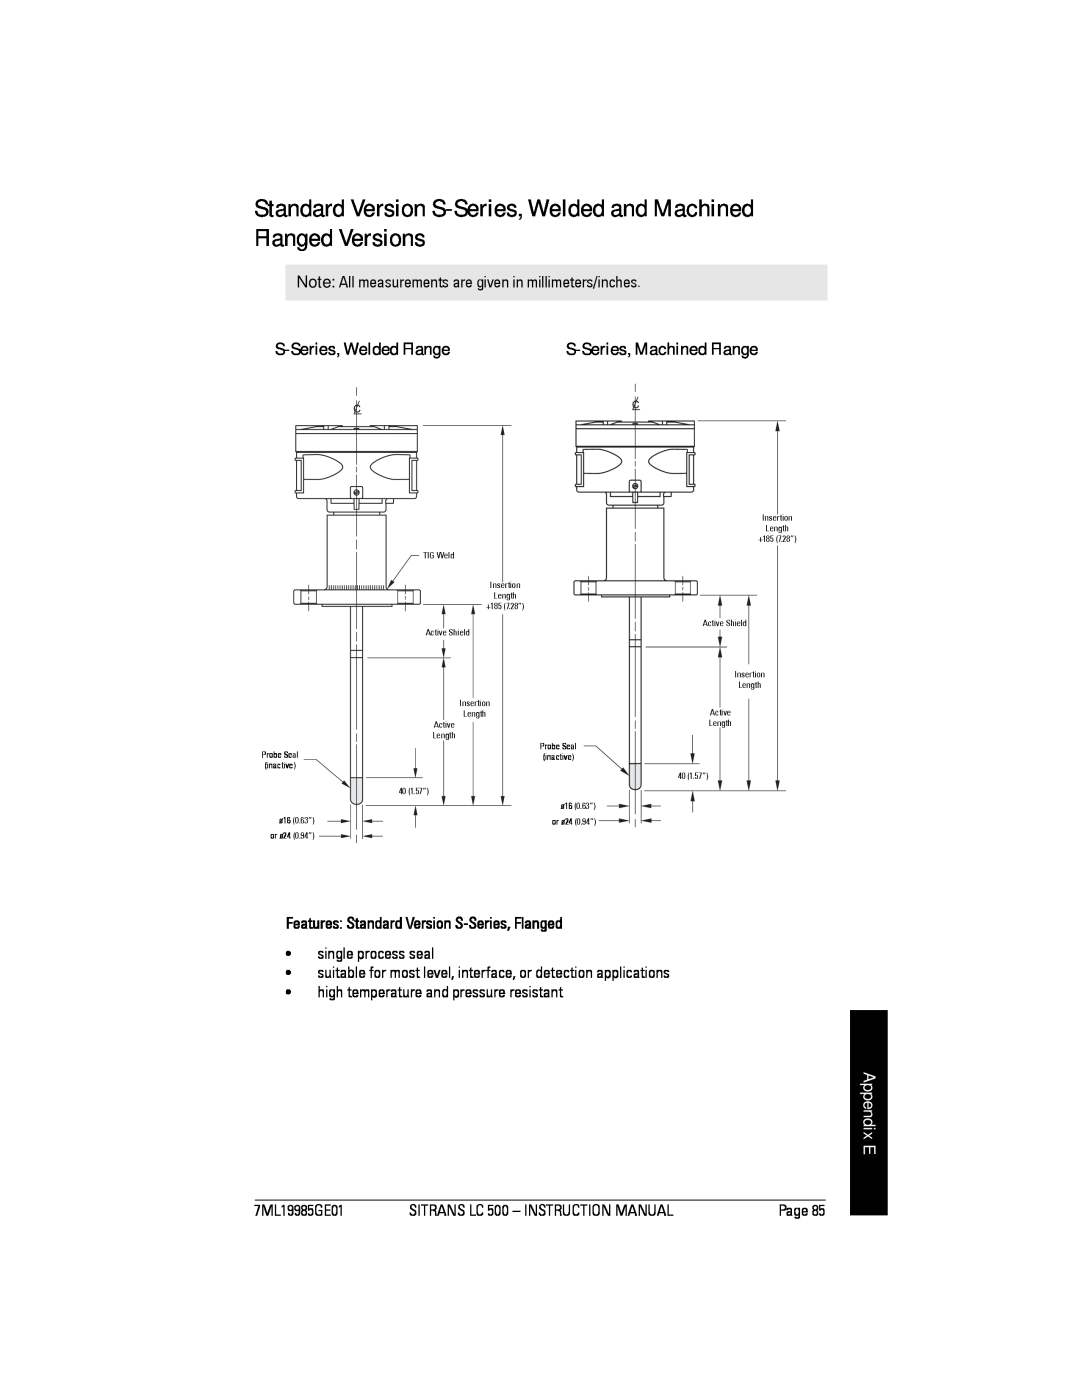 Siemens Sitrans Standard Version S-Series, Welded and Machined Flanged Versions, S-Series, Welded Flange, Appendix E 